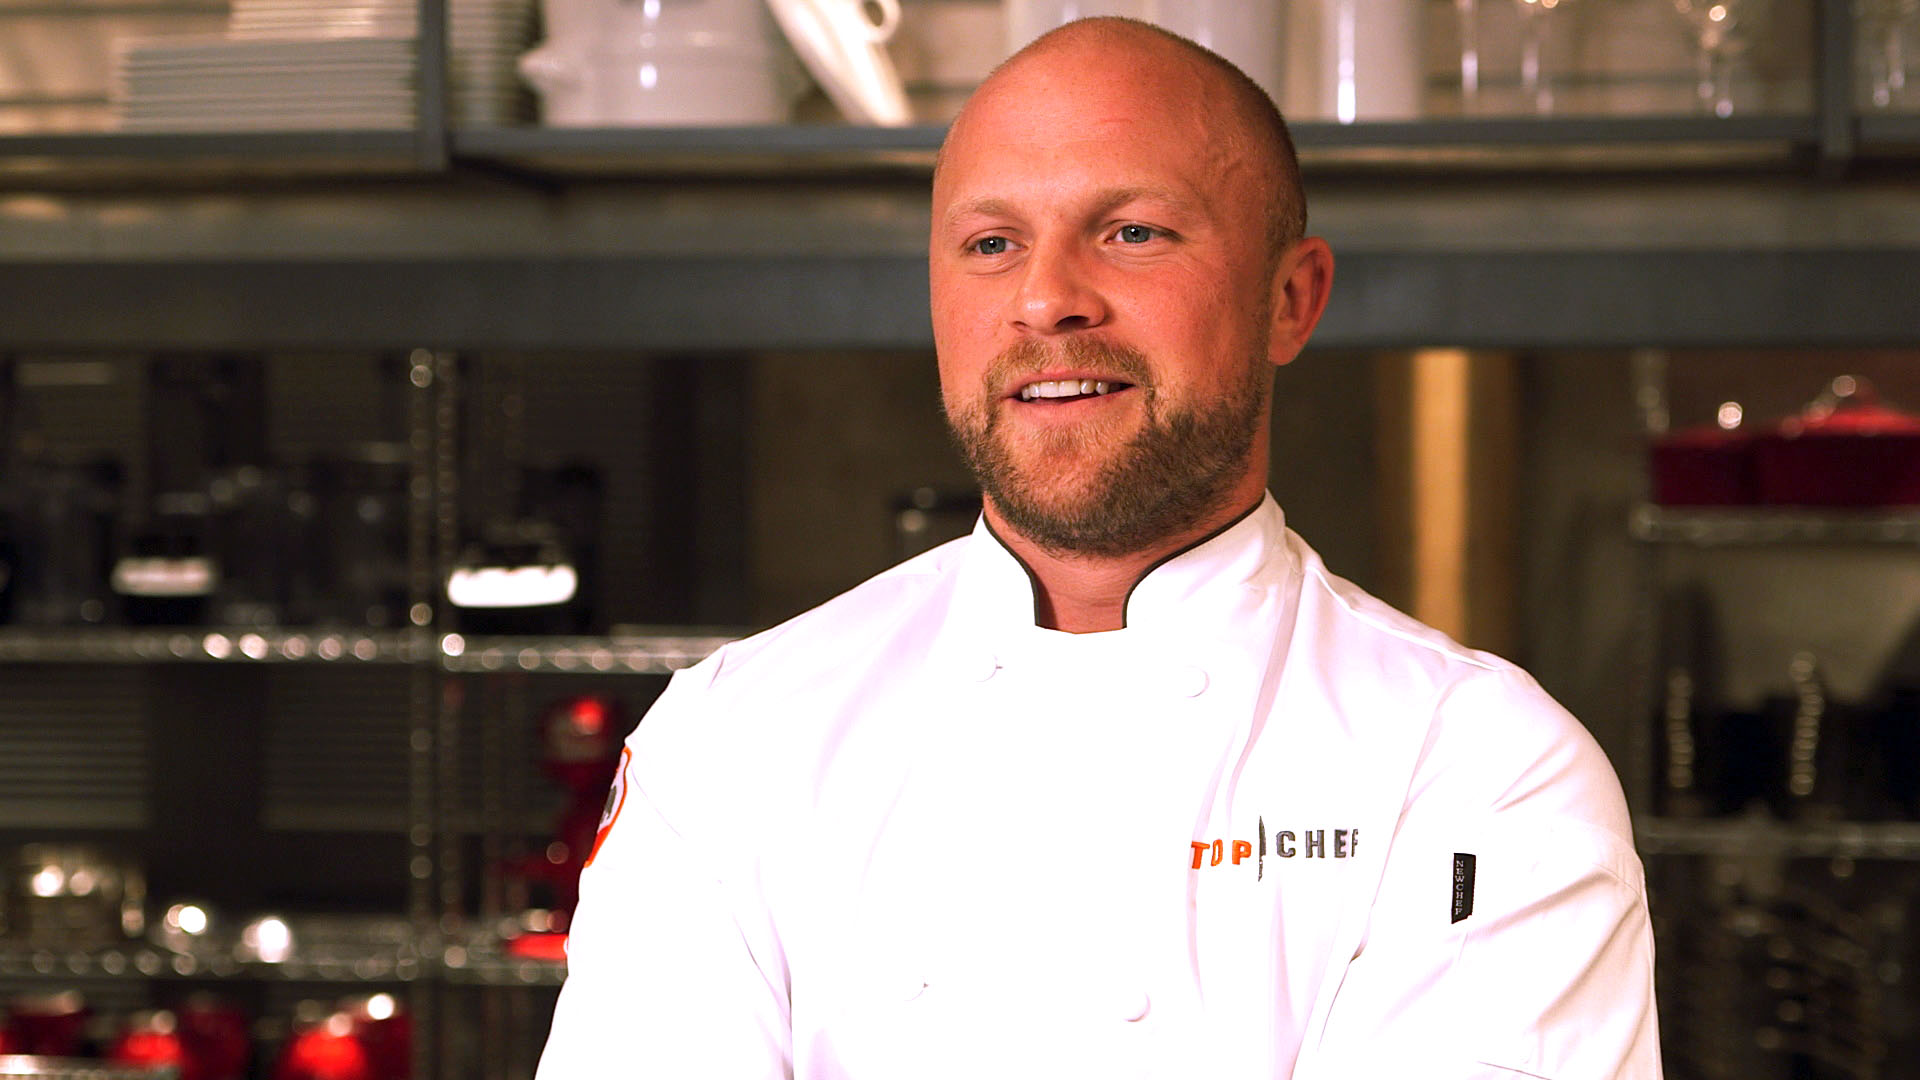 utilsigtet hændelse Svaghed hellig Watch Top Chef 13: Meet Jeremy Ford | Top Chef Season 13 Video